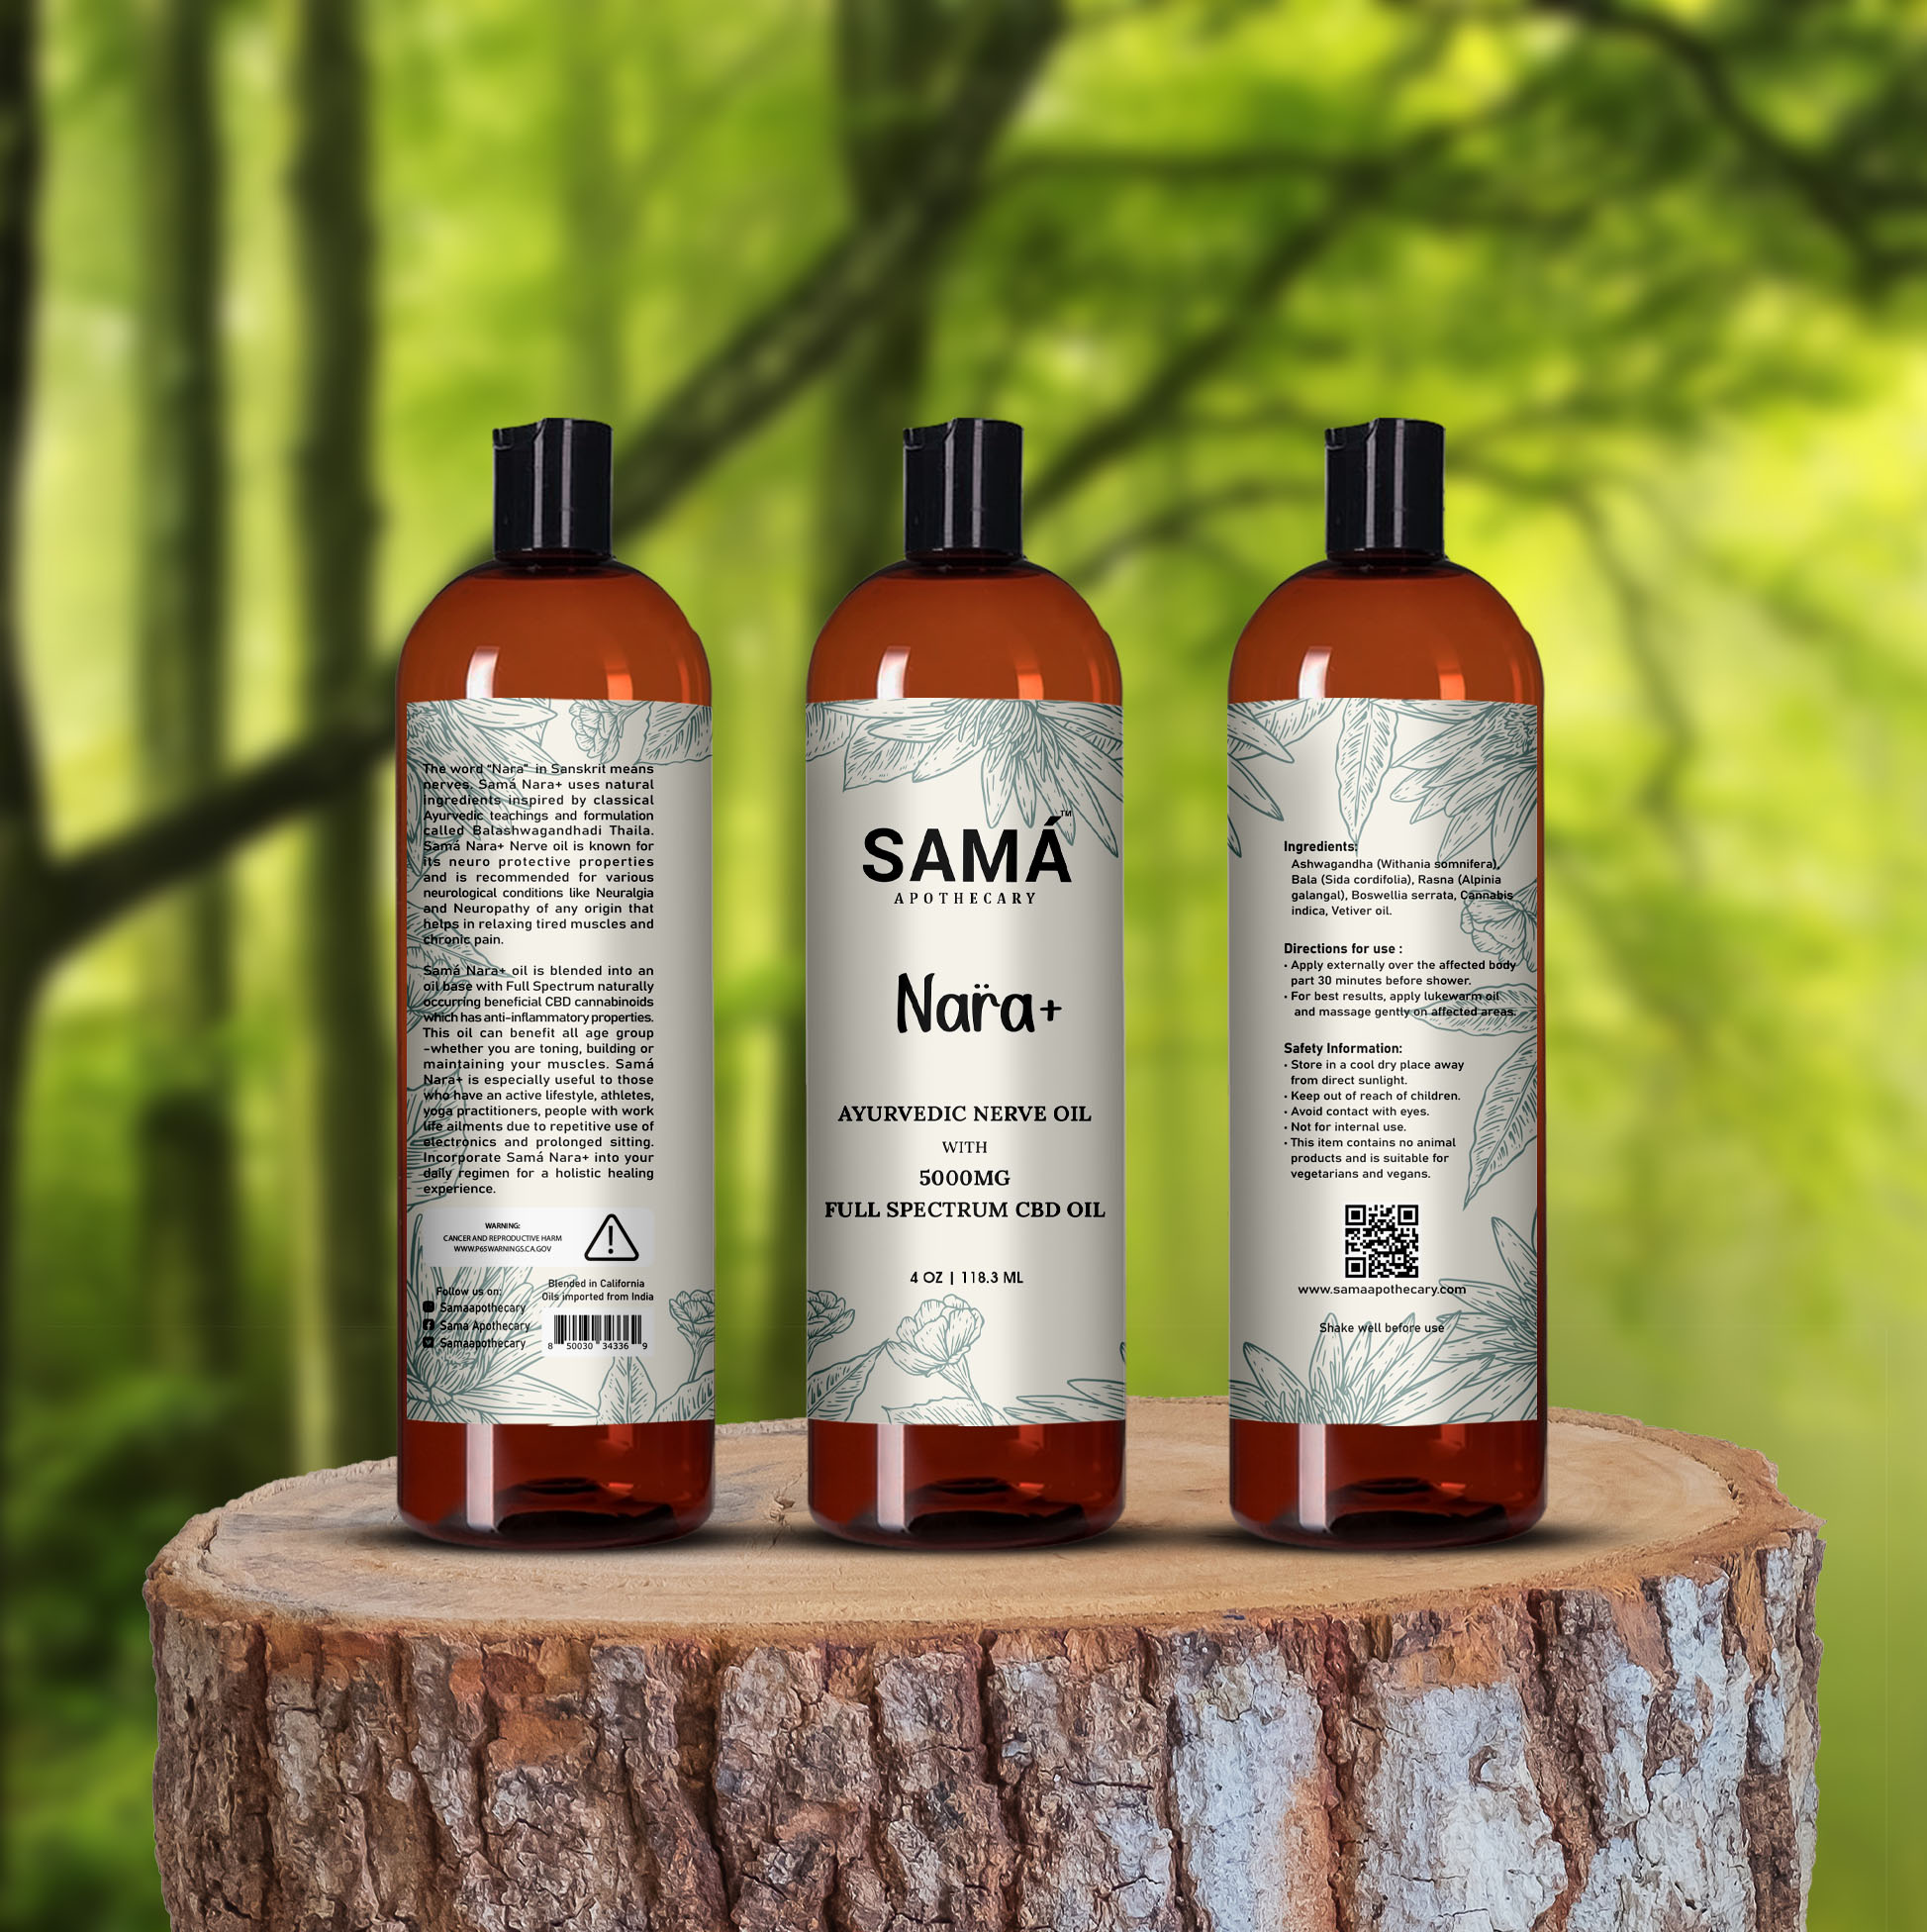 SAMA Nara+ 5000mg-oil-bottle